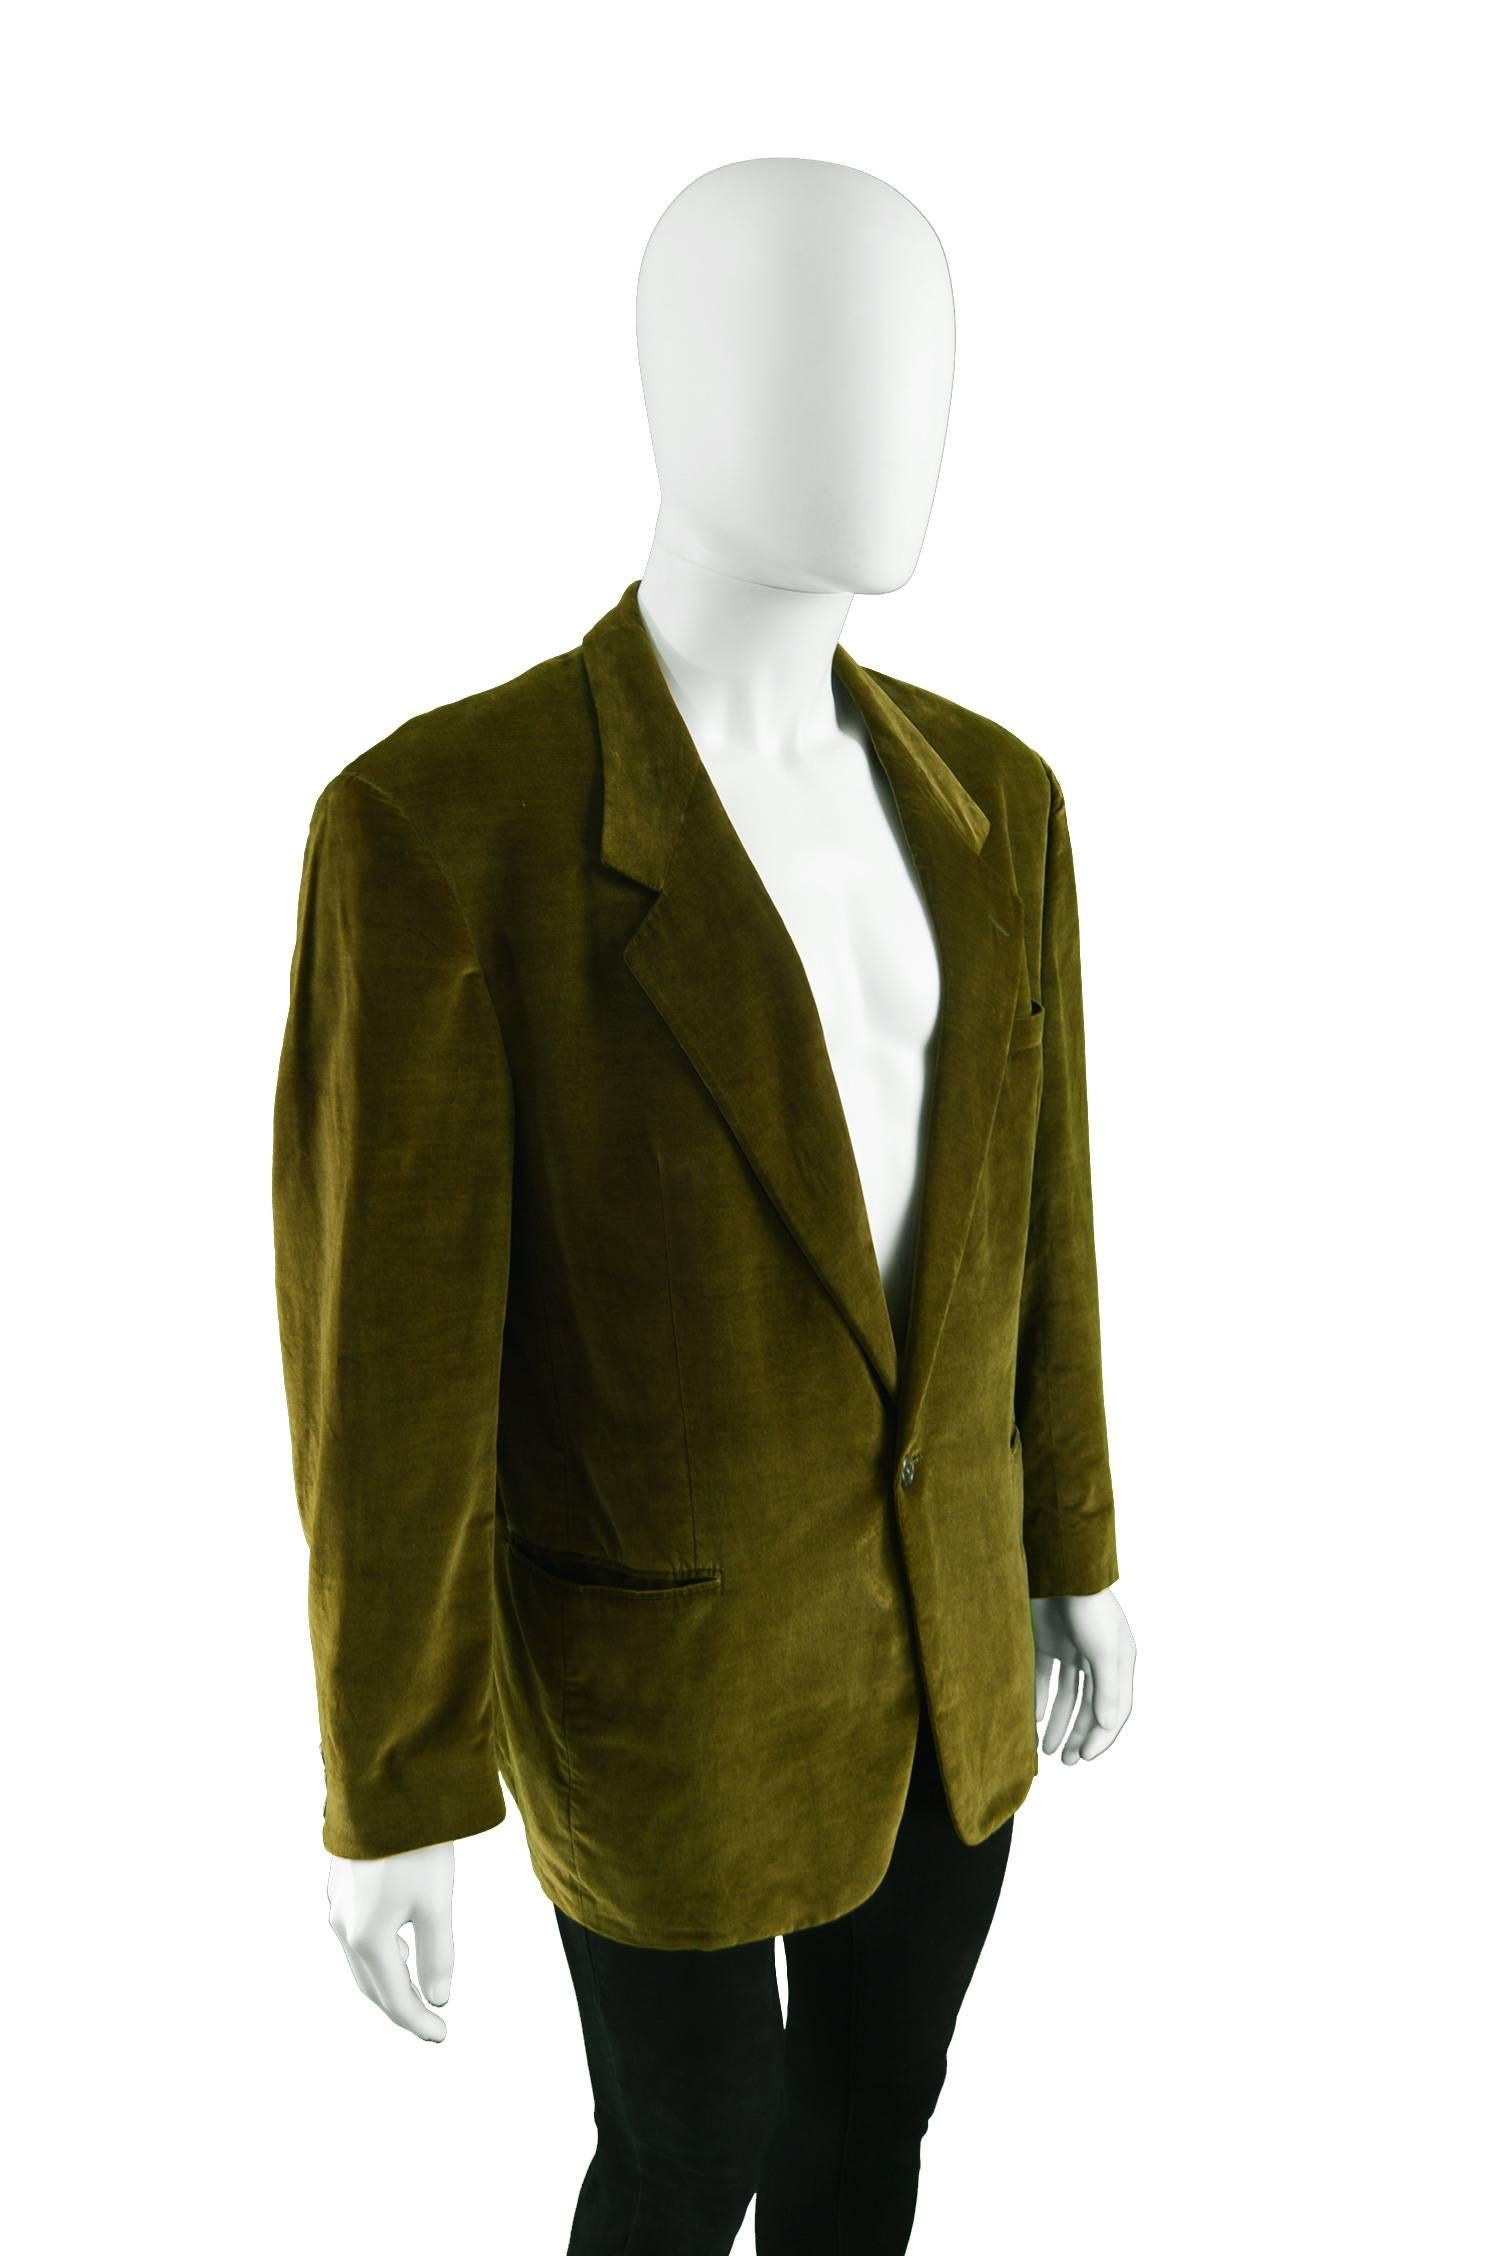 Gianni Versace Men's Vintage Brown Velvet Bold Shoulder Blazer Jacket, 1980s Herren